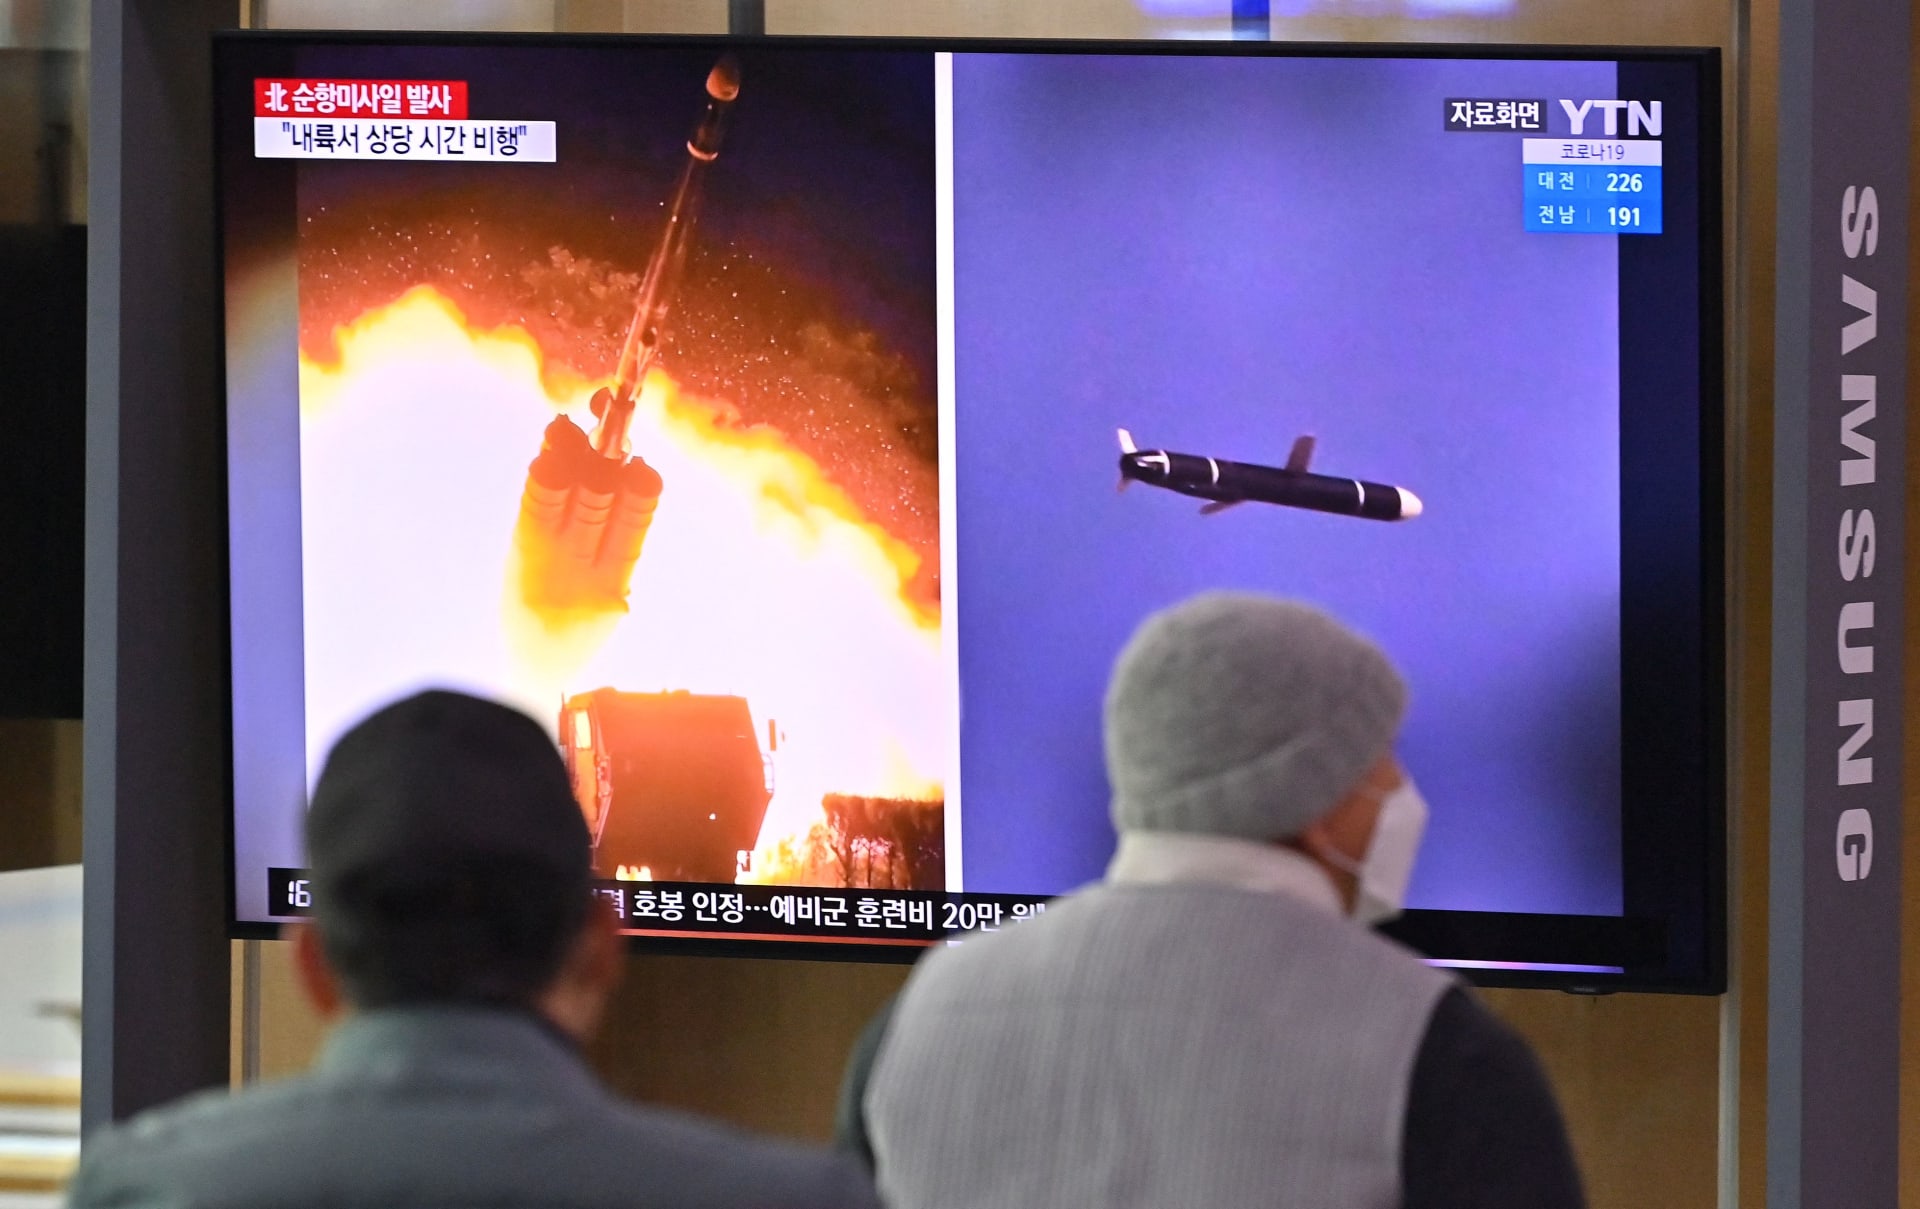 شاشة في محطة سكة حديد بسيول تعرض نشرة إخبار عن تجربة صاروخية لكوريا الشمالية 